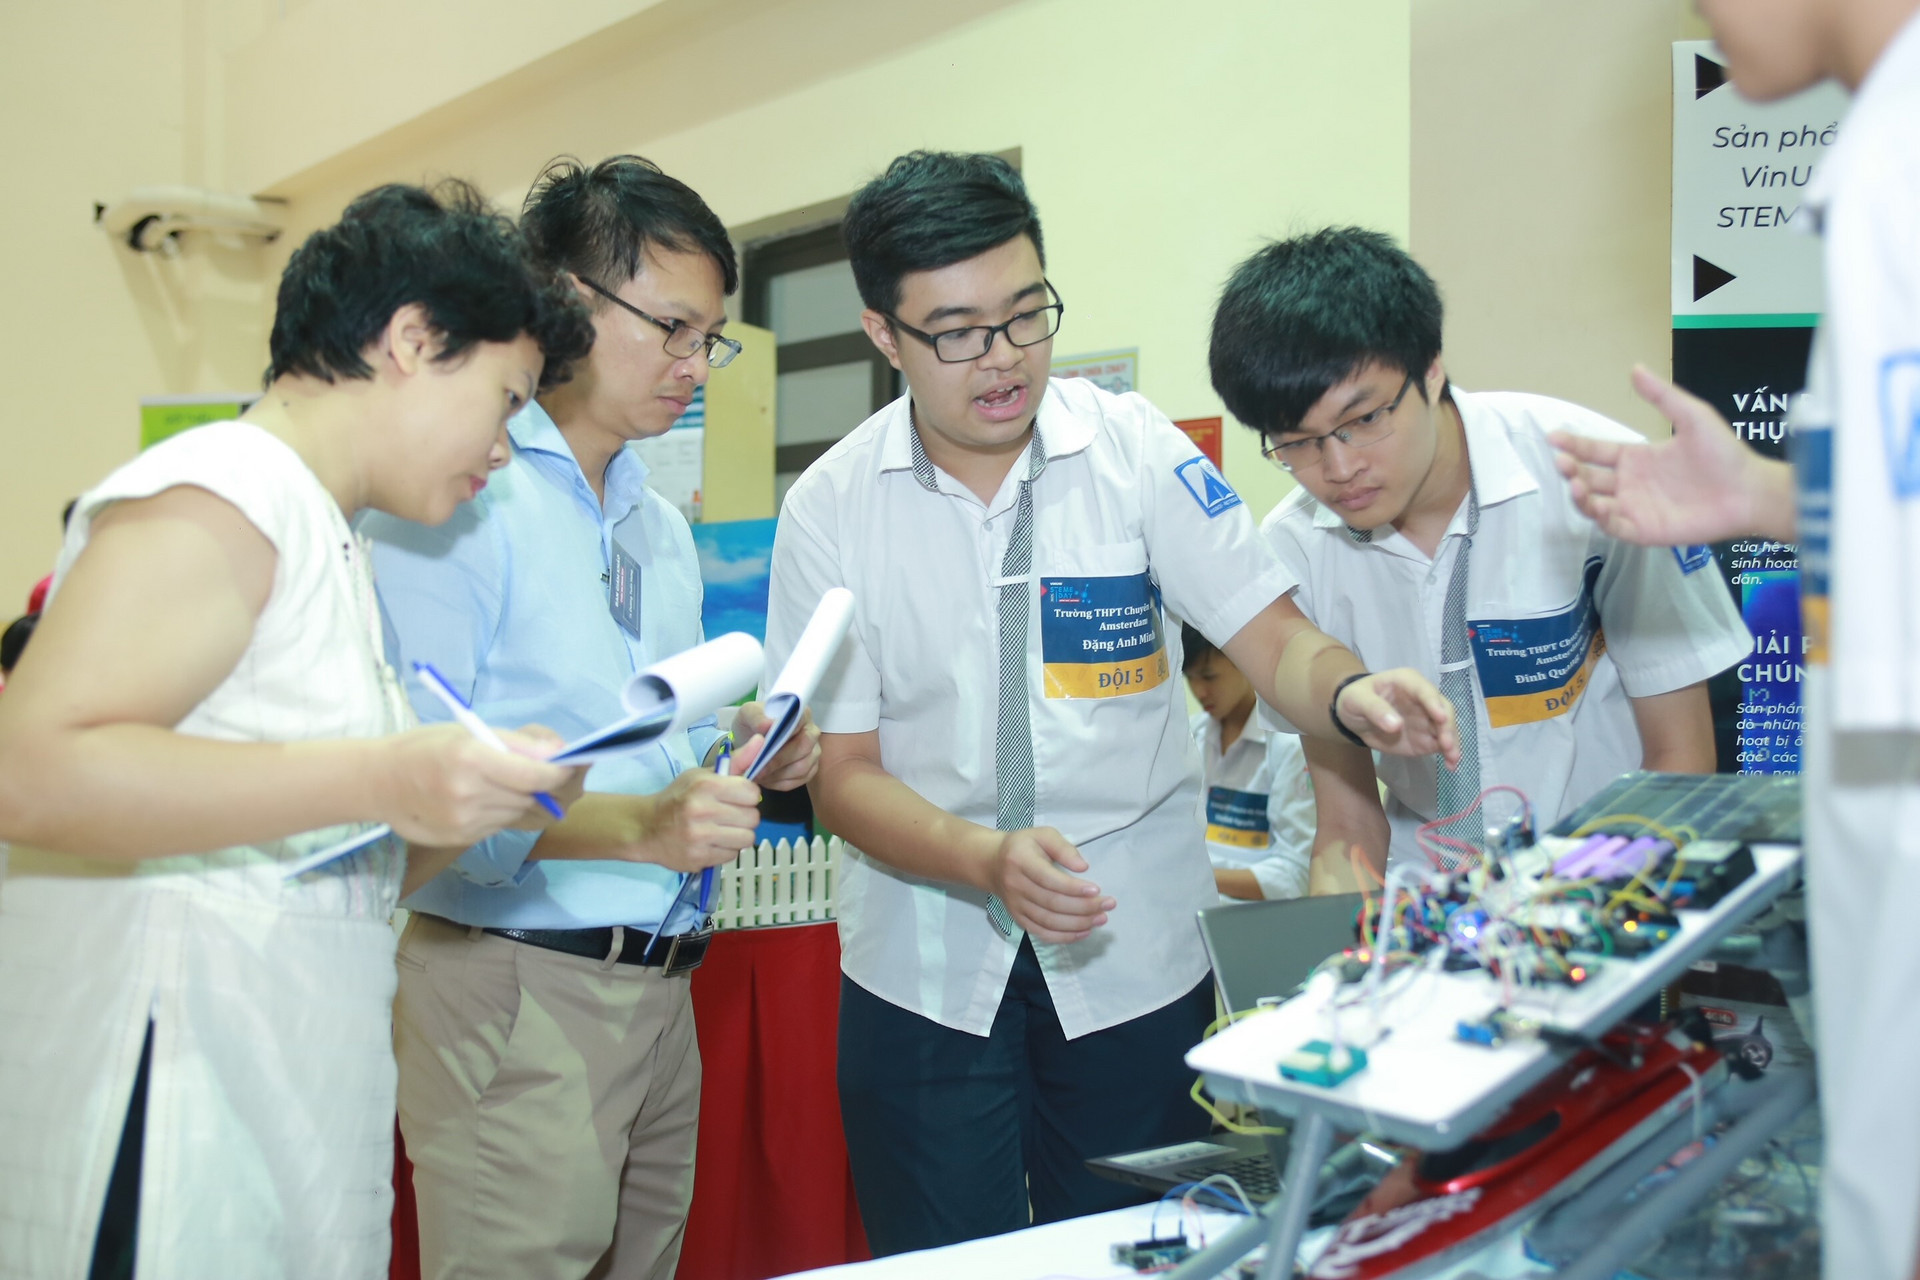 STEAM for Vietnam và Vinuni tổ chức khóa học về Robotics cho học sinh THPT - 1